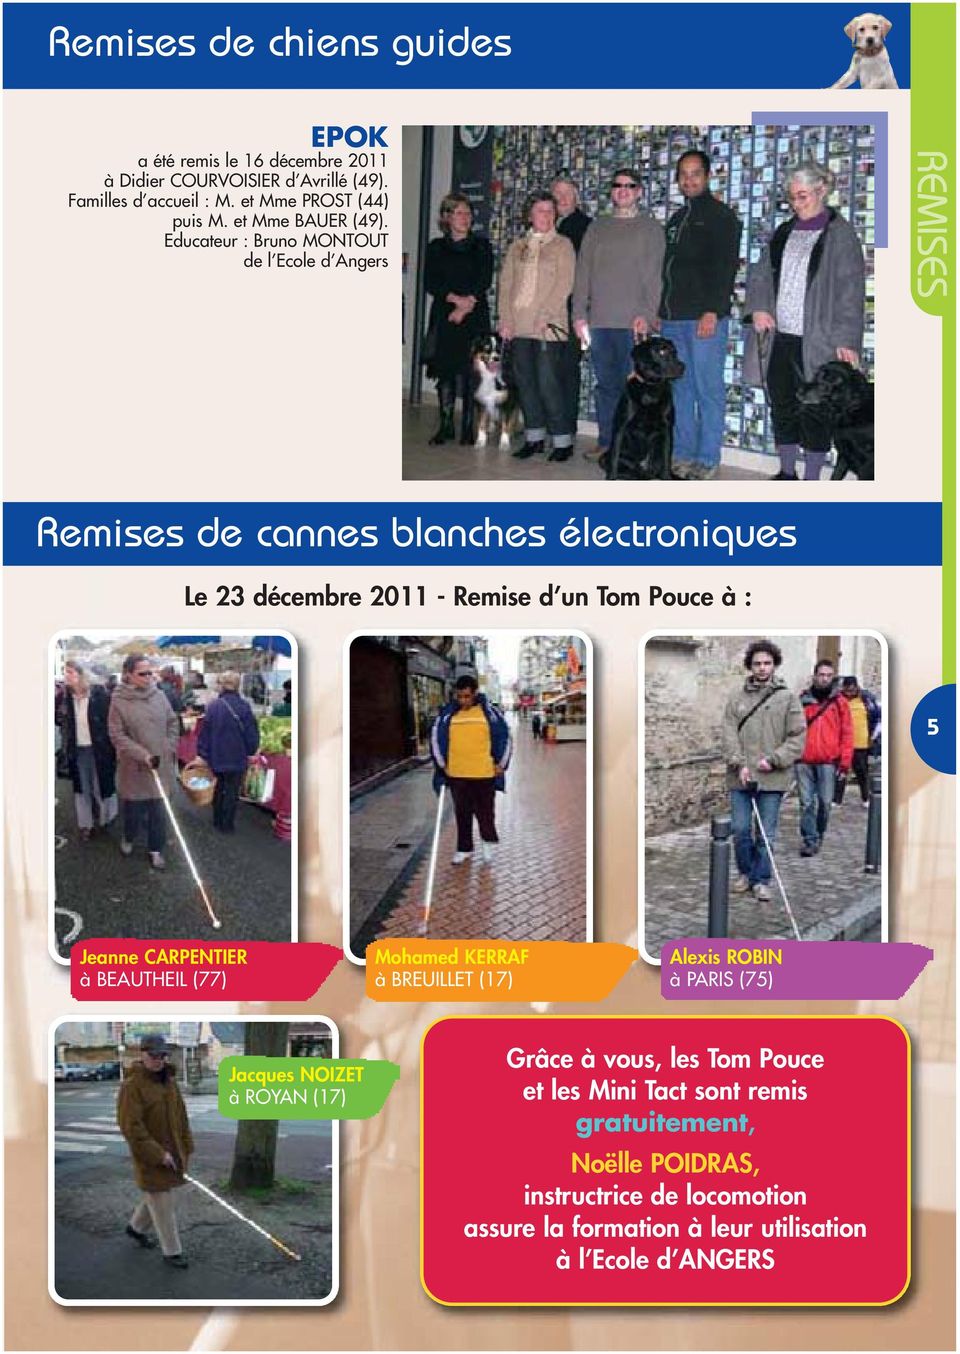 Educateur : Bruno MONTOUT de l Ecole d Angers REMISES Remises de cannes blanches électroniques Le 23 décembre 2011 - Remise d un Tom Pouce à : 5